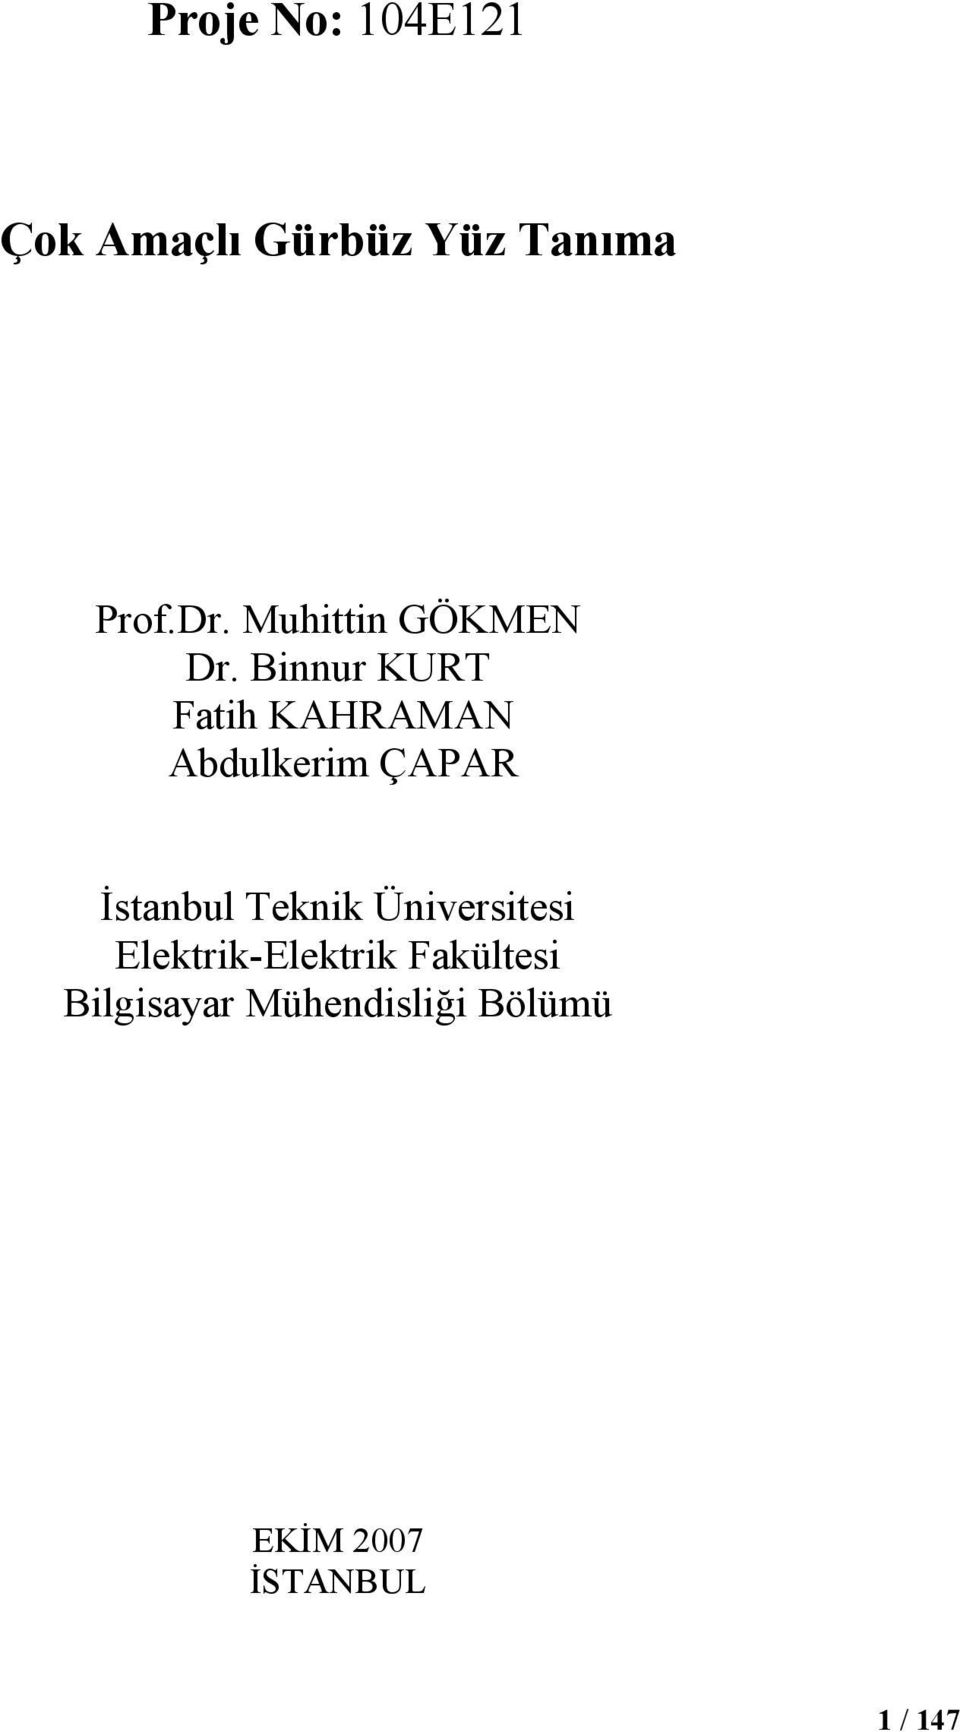 Binnur KURT Fatih KAHRAMAN Abdulkerim ÇAPAR İstanbul